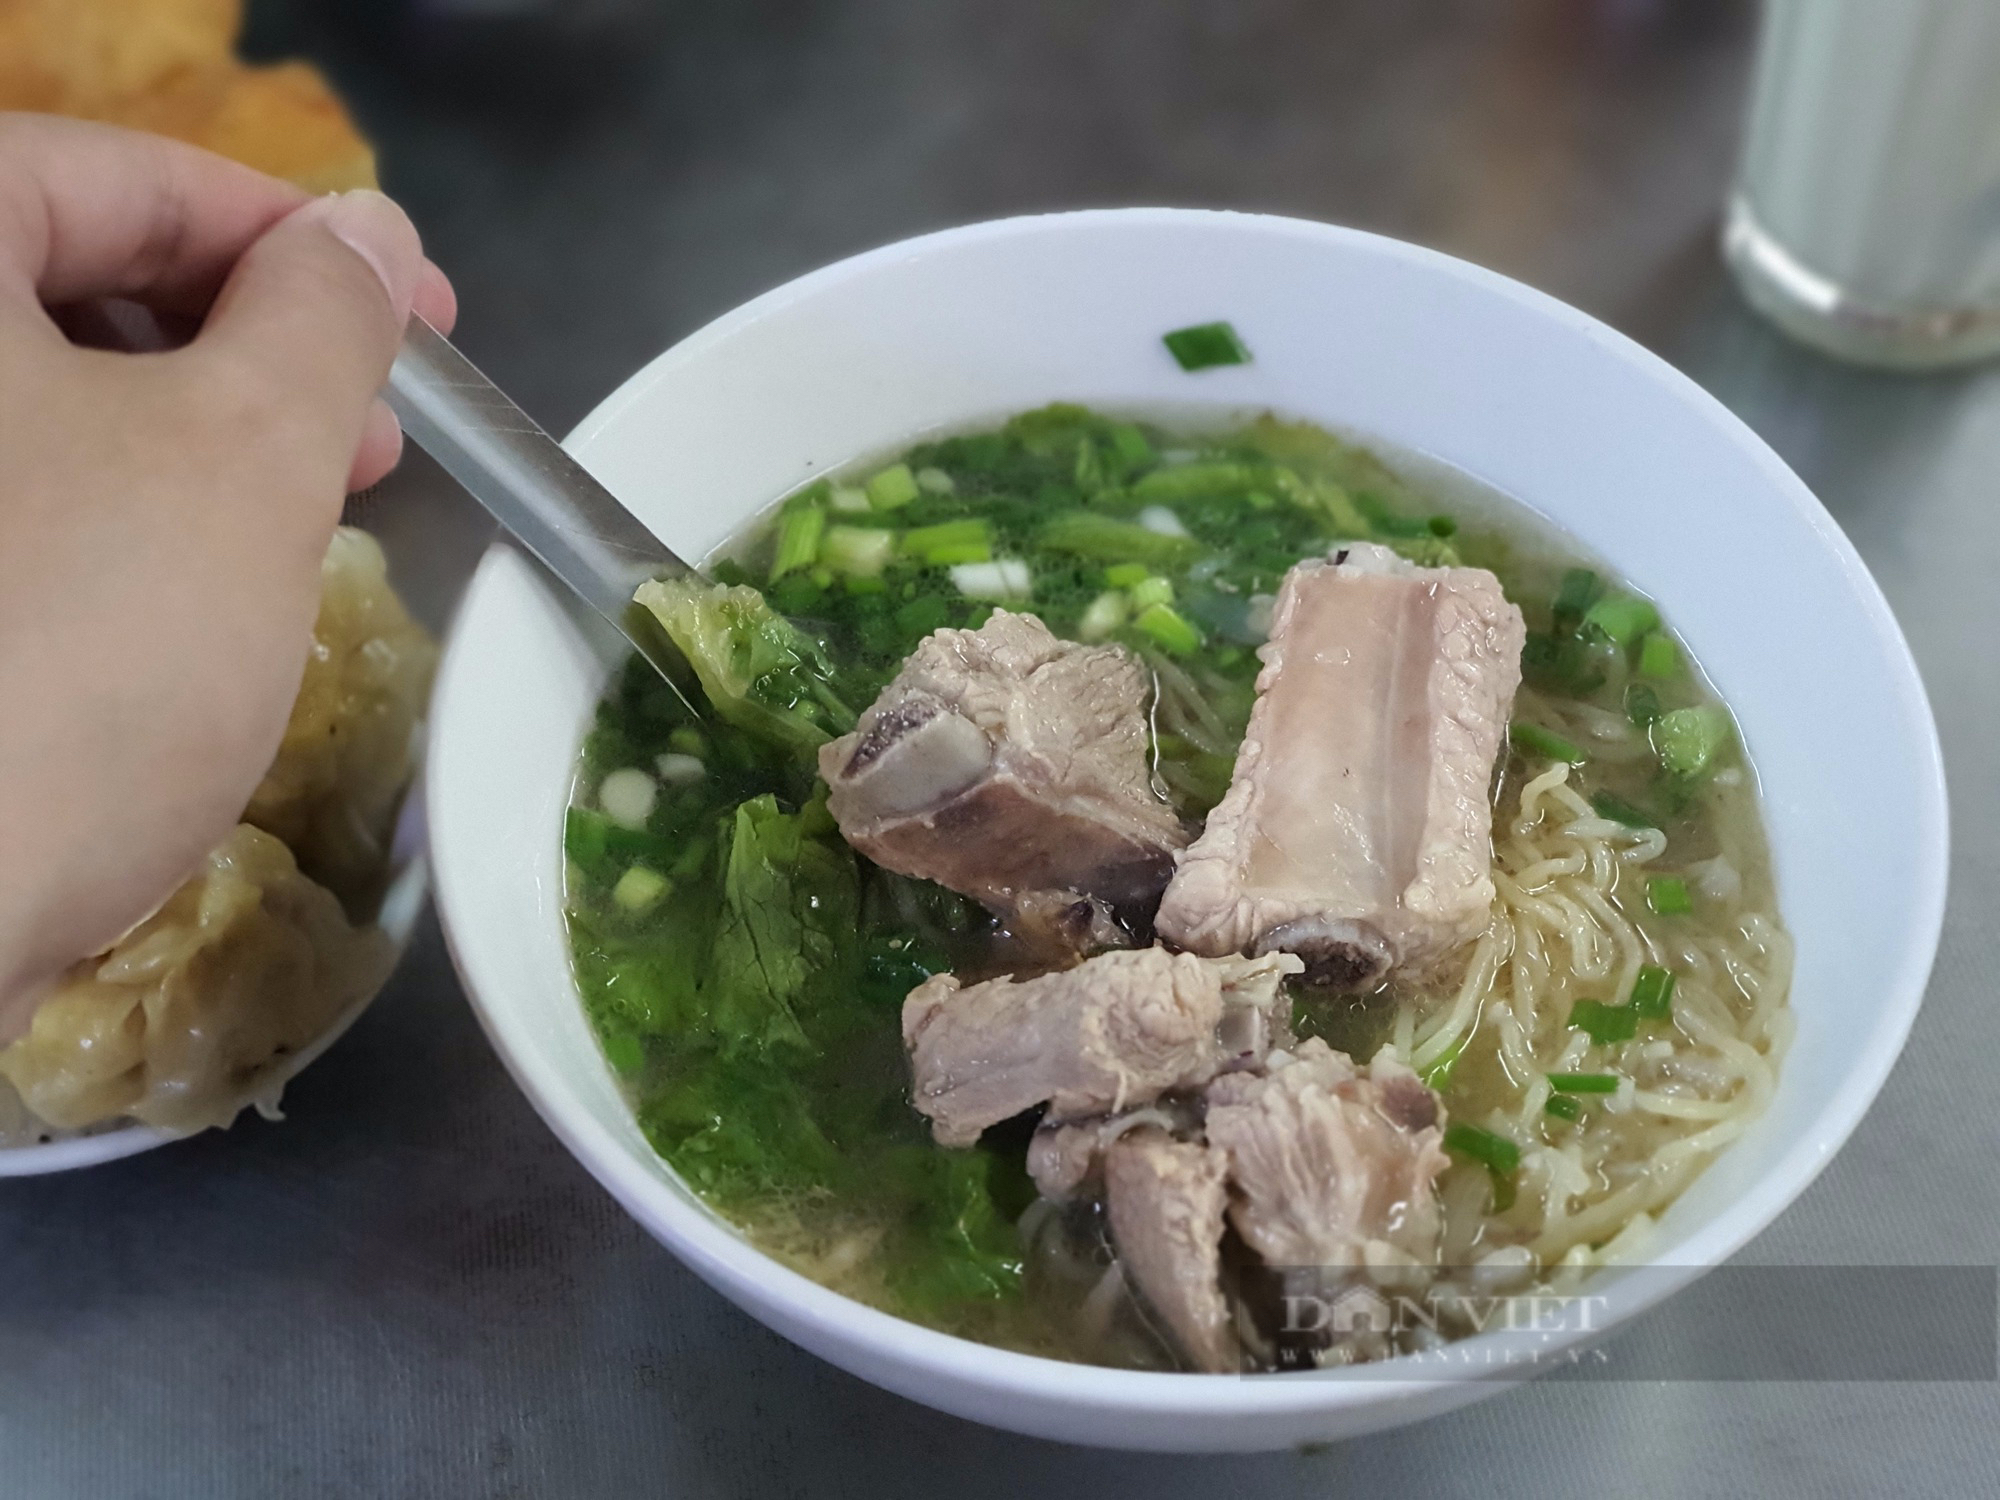 Sài Gòn quán: Quán ăn chính gốc người Hoa ở quận 3, khách hết hồn vì cả chục món dimsum bày trên bàn - Ảnh 3.